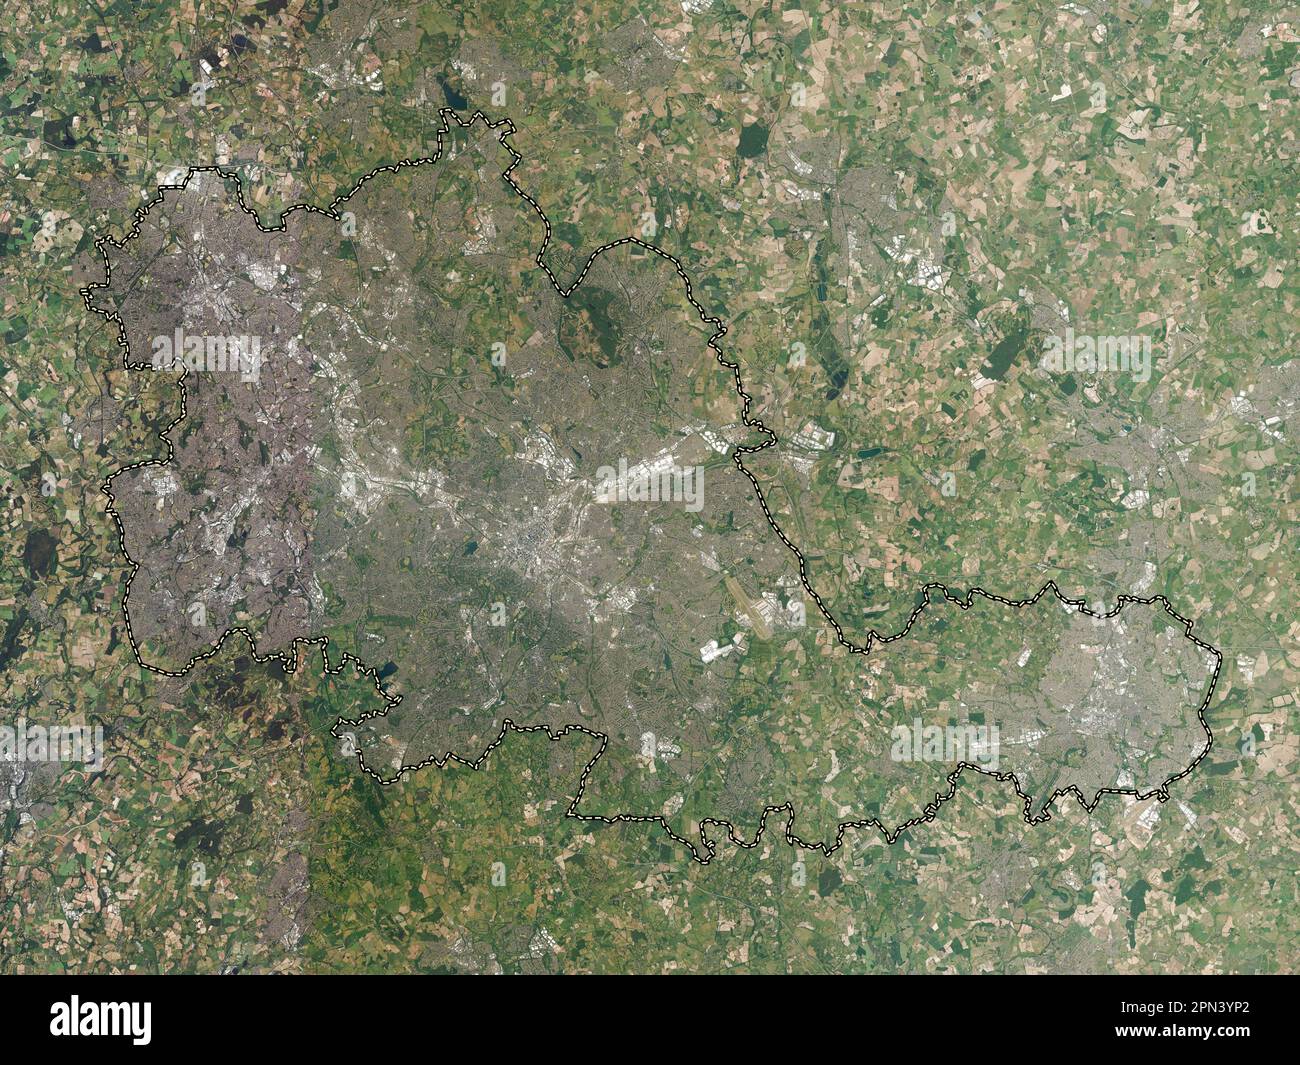 West Midlands Combined Authority, regione dell'Inghilterra - Gran Bretagna. Mappa satellitare ad alta risoluzione Foto Stock